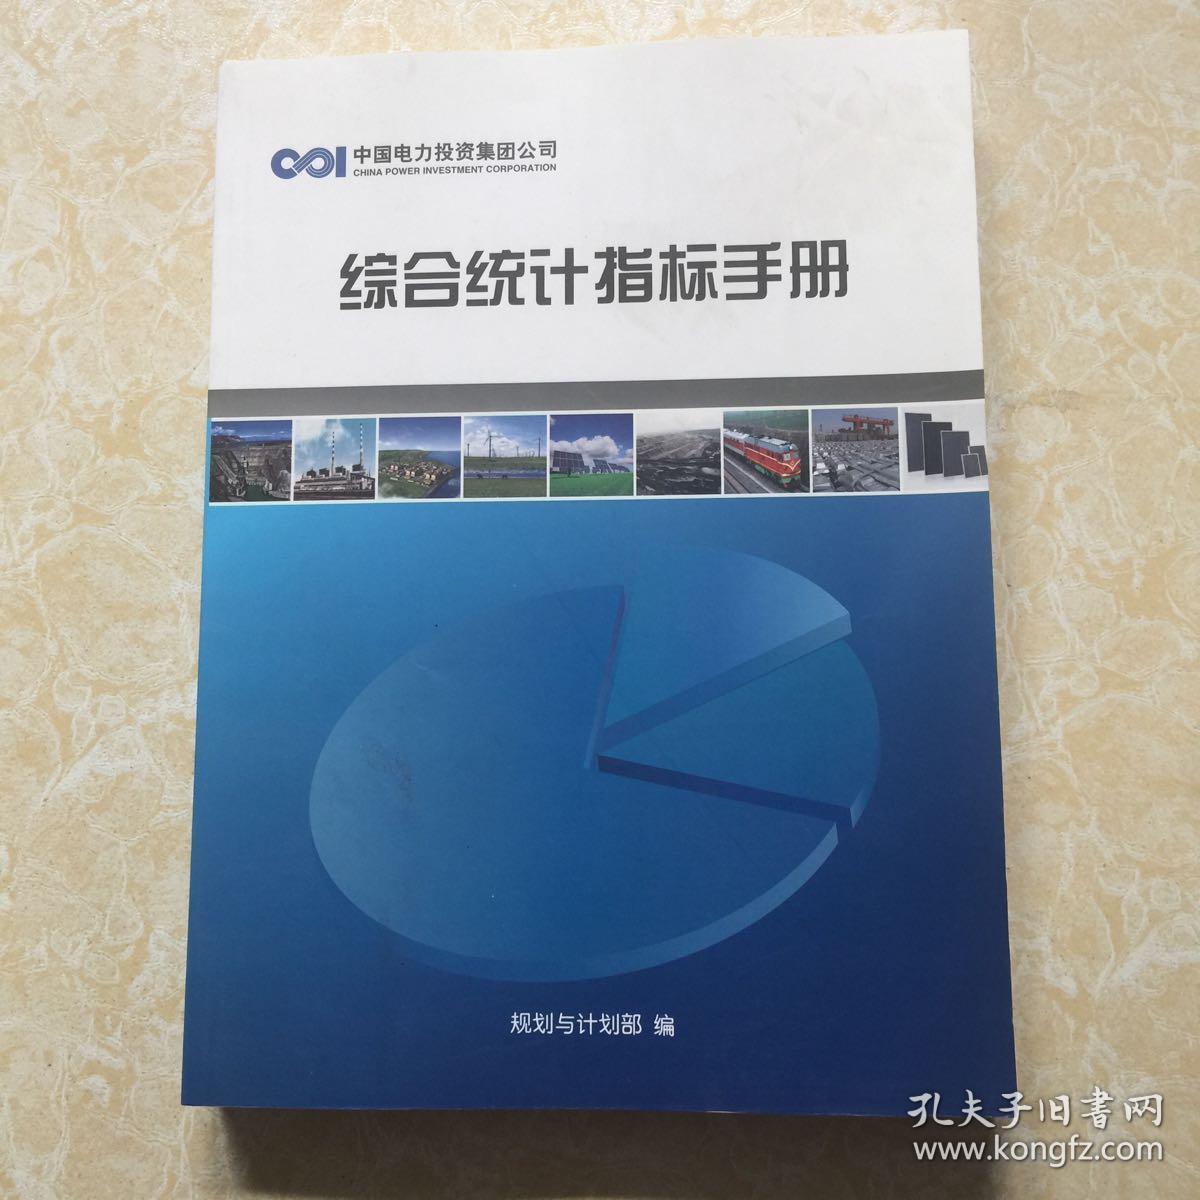 中国电力投资集团公司综合统计指标手册